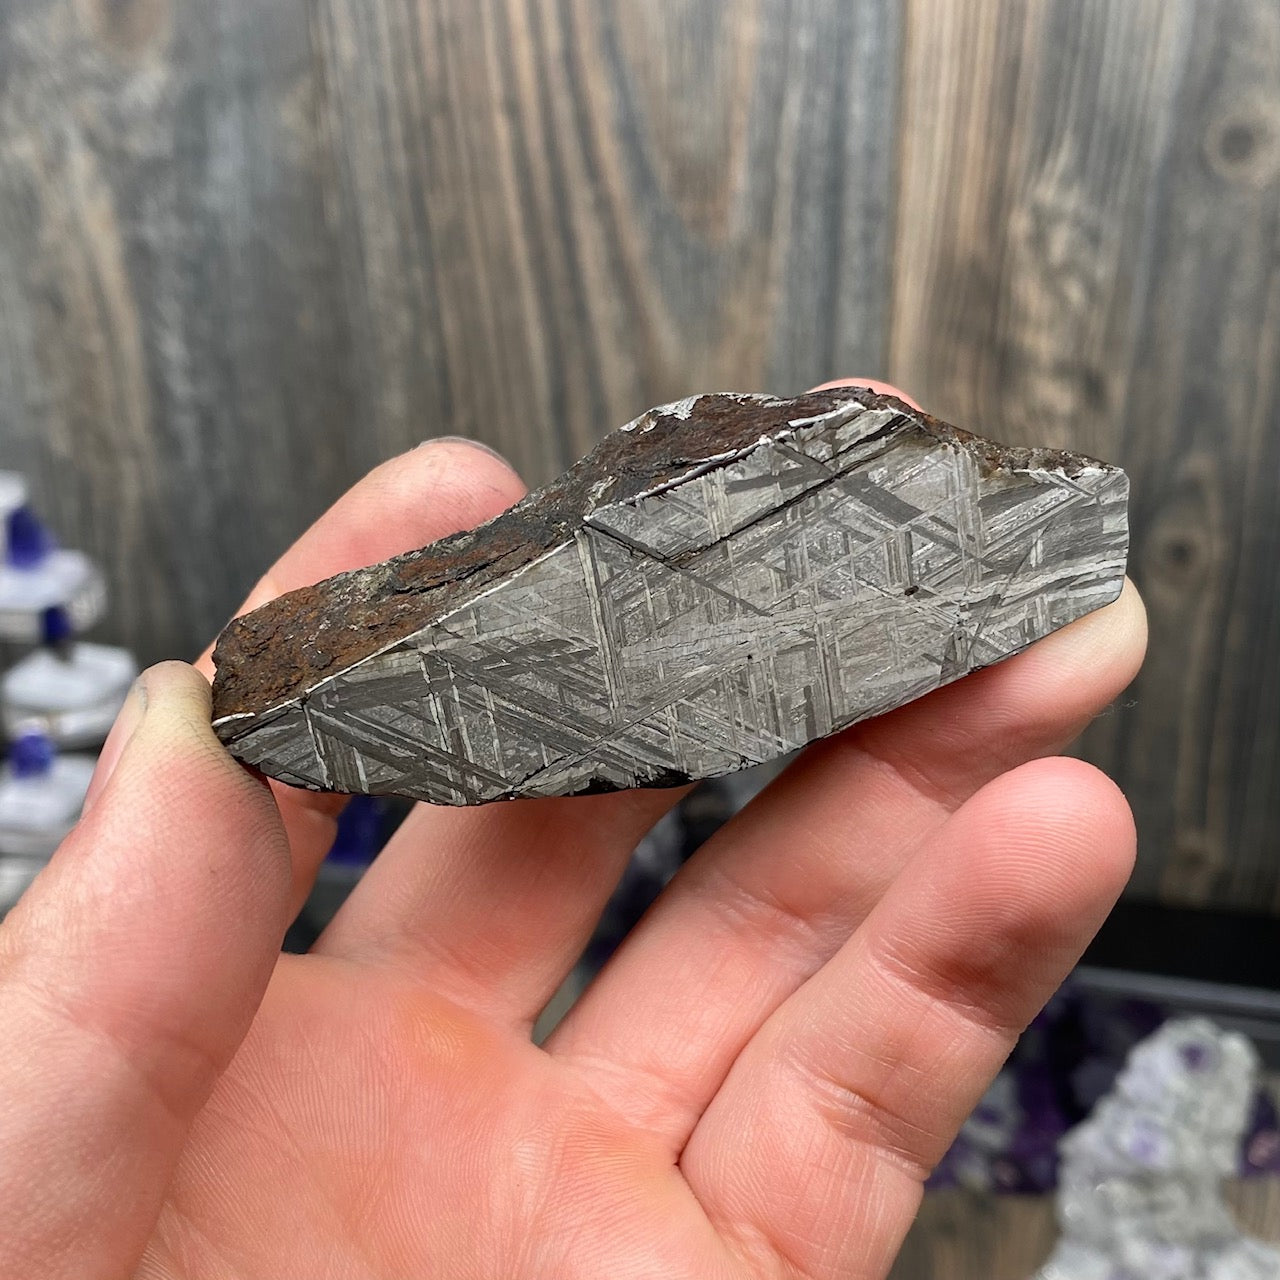 Widmanstätten etch pattern Muonionalusta Meteorite